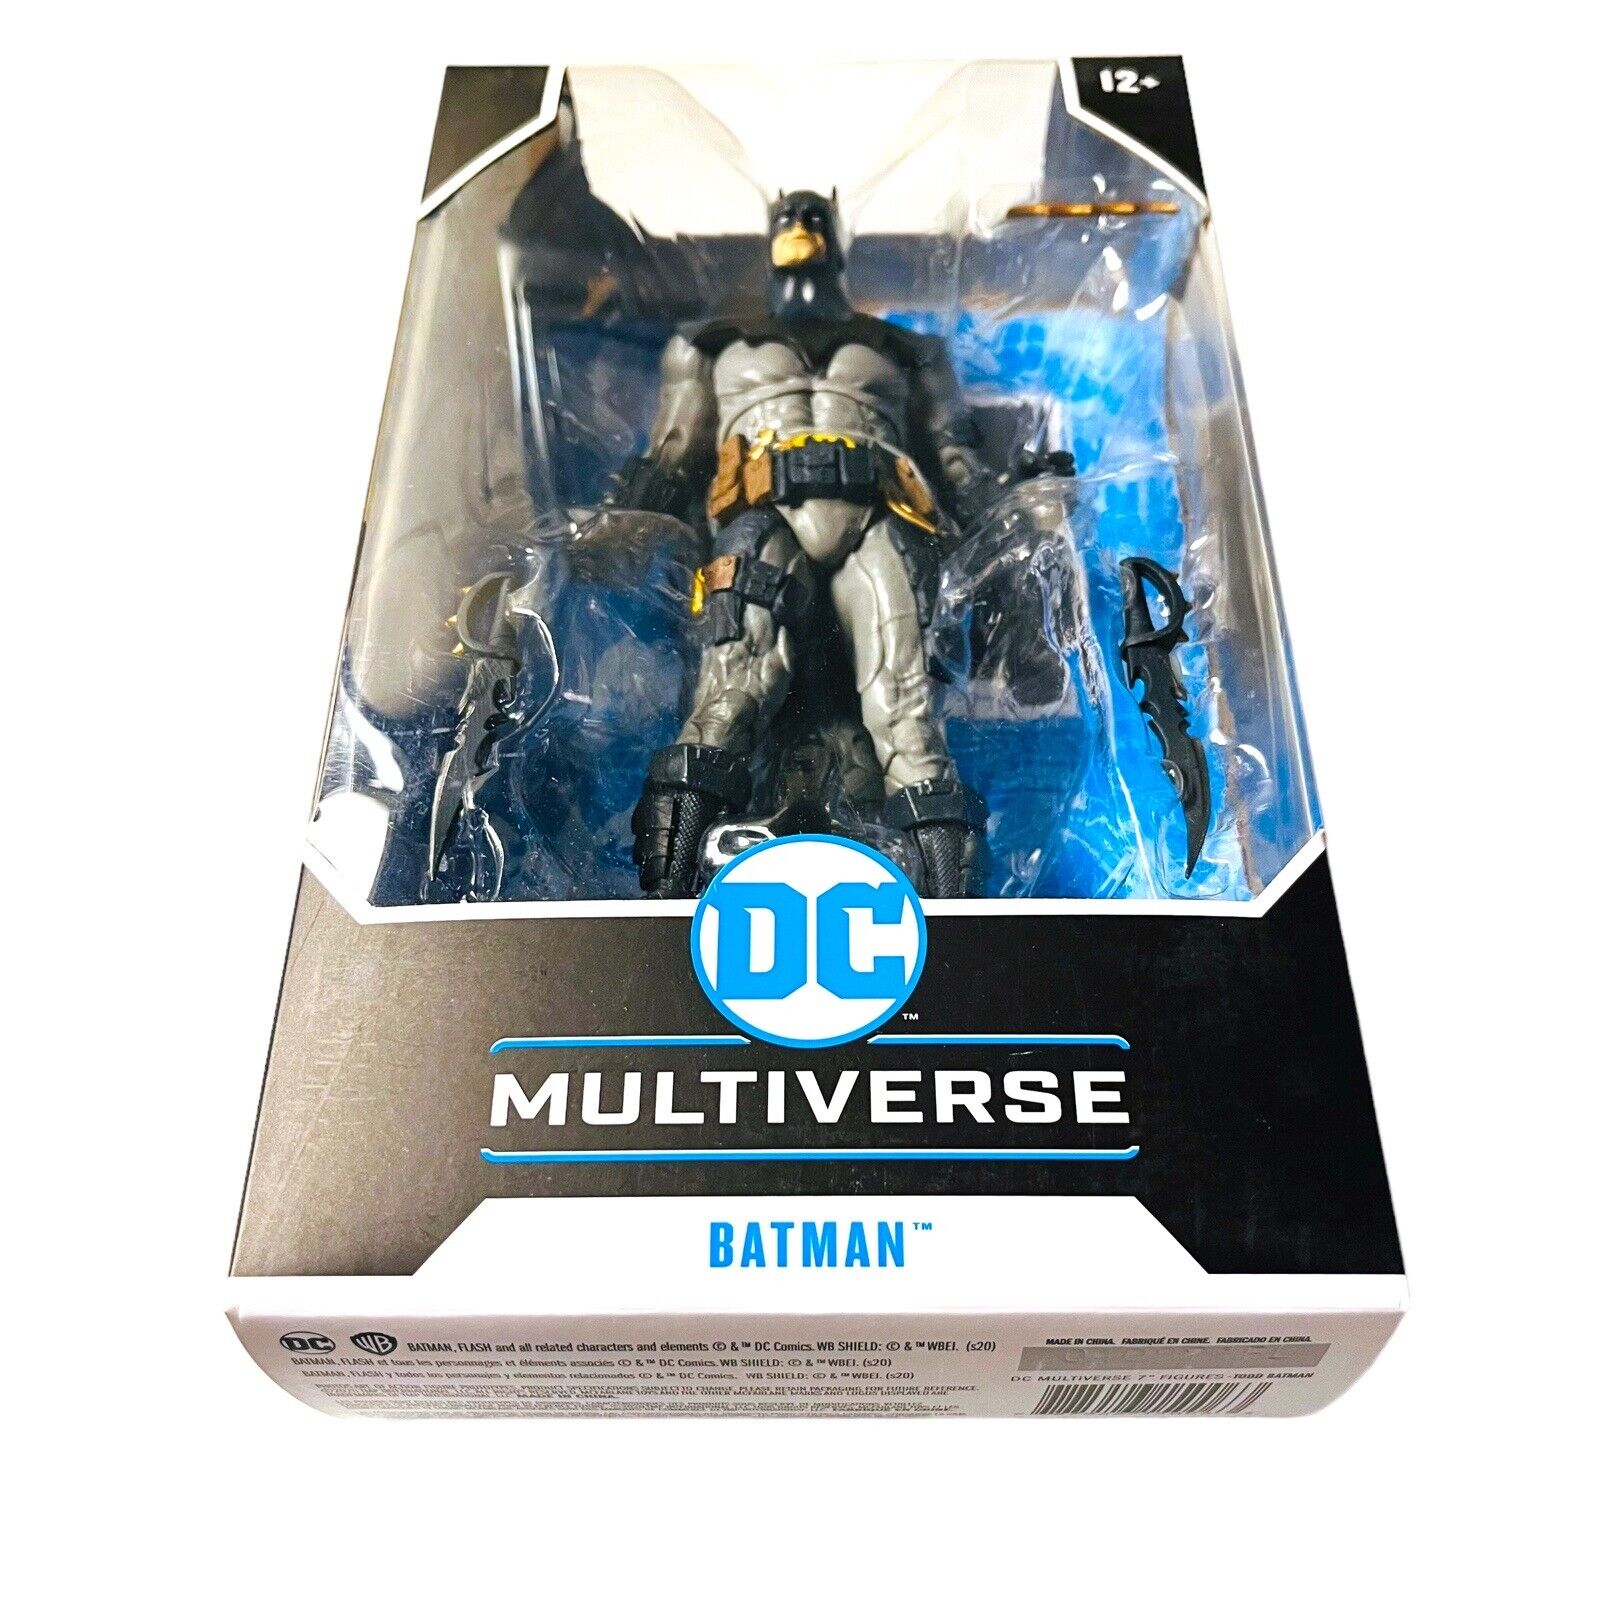 McFarlane Batman DC Multiverse 7 inch Figure Designed by Todd Blue Version FAST McFarlane Toys 15006 - фотография #5